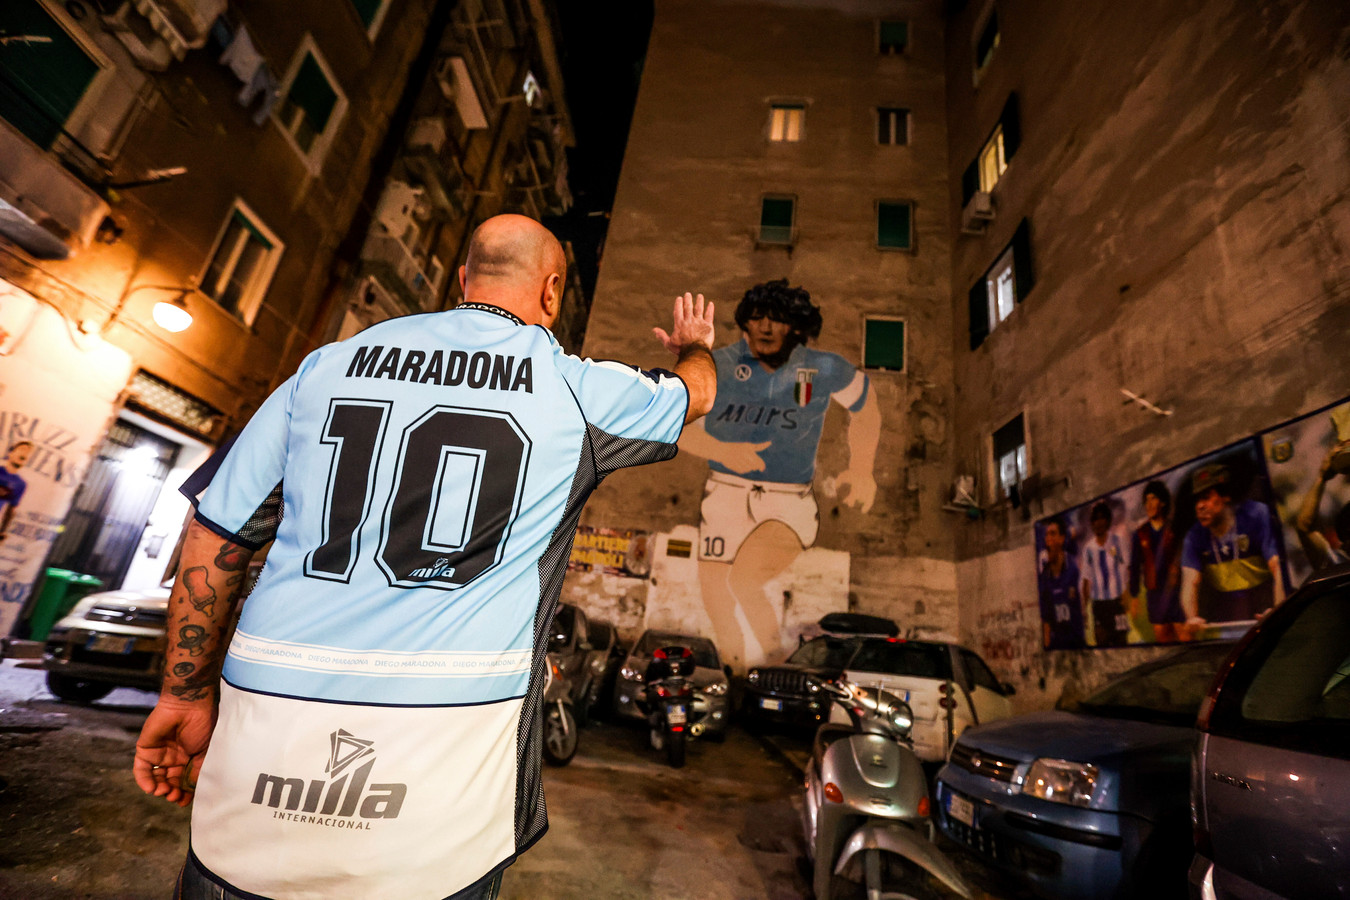 Napoli, Italië. Na de dood van Maradona kwamen veel fans bij specifiek deze muurschildering samen.